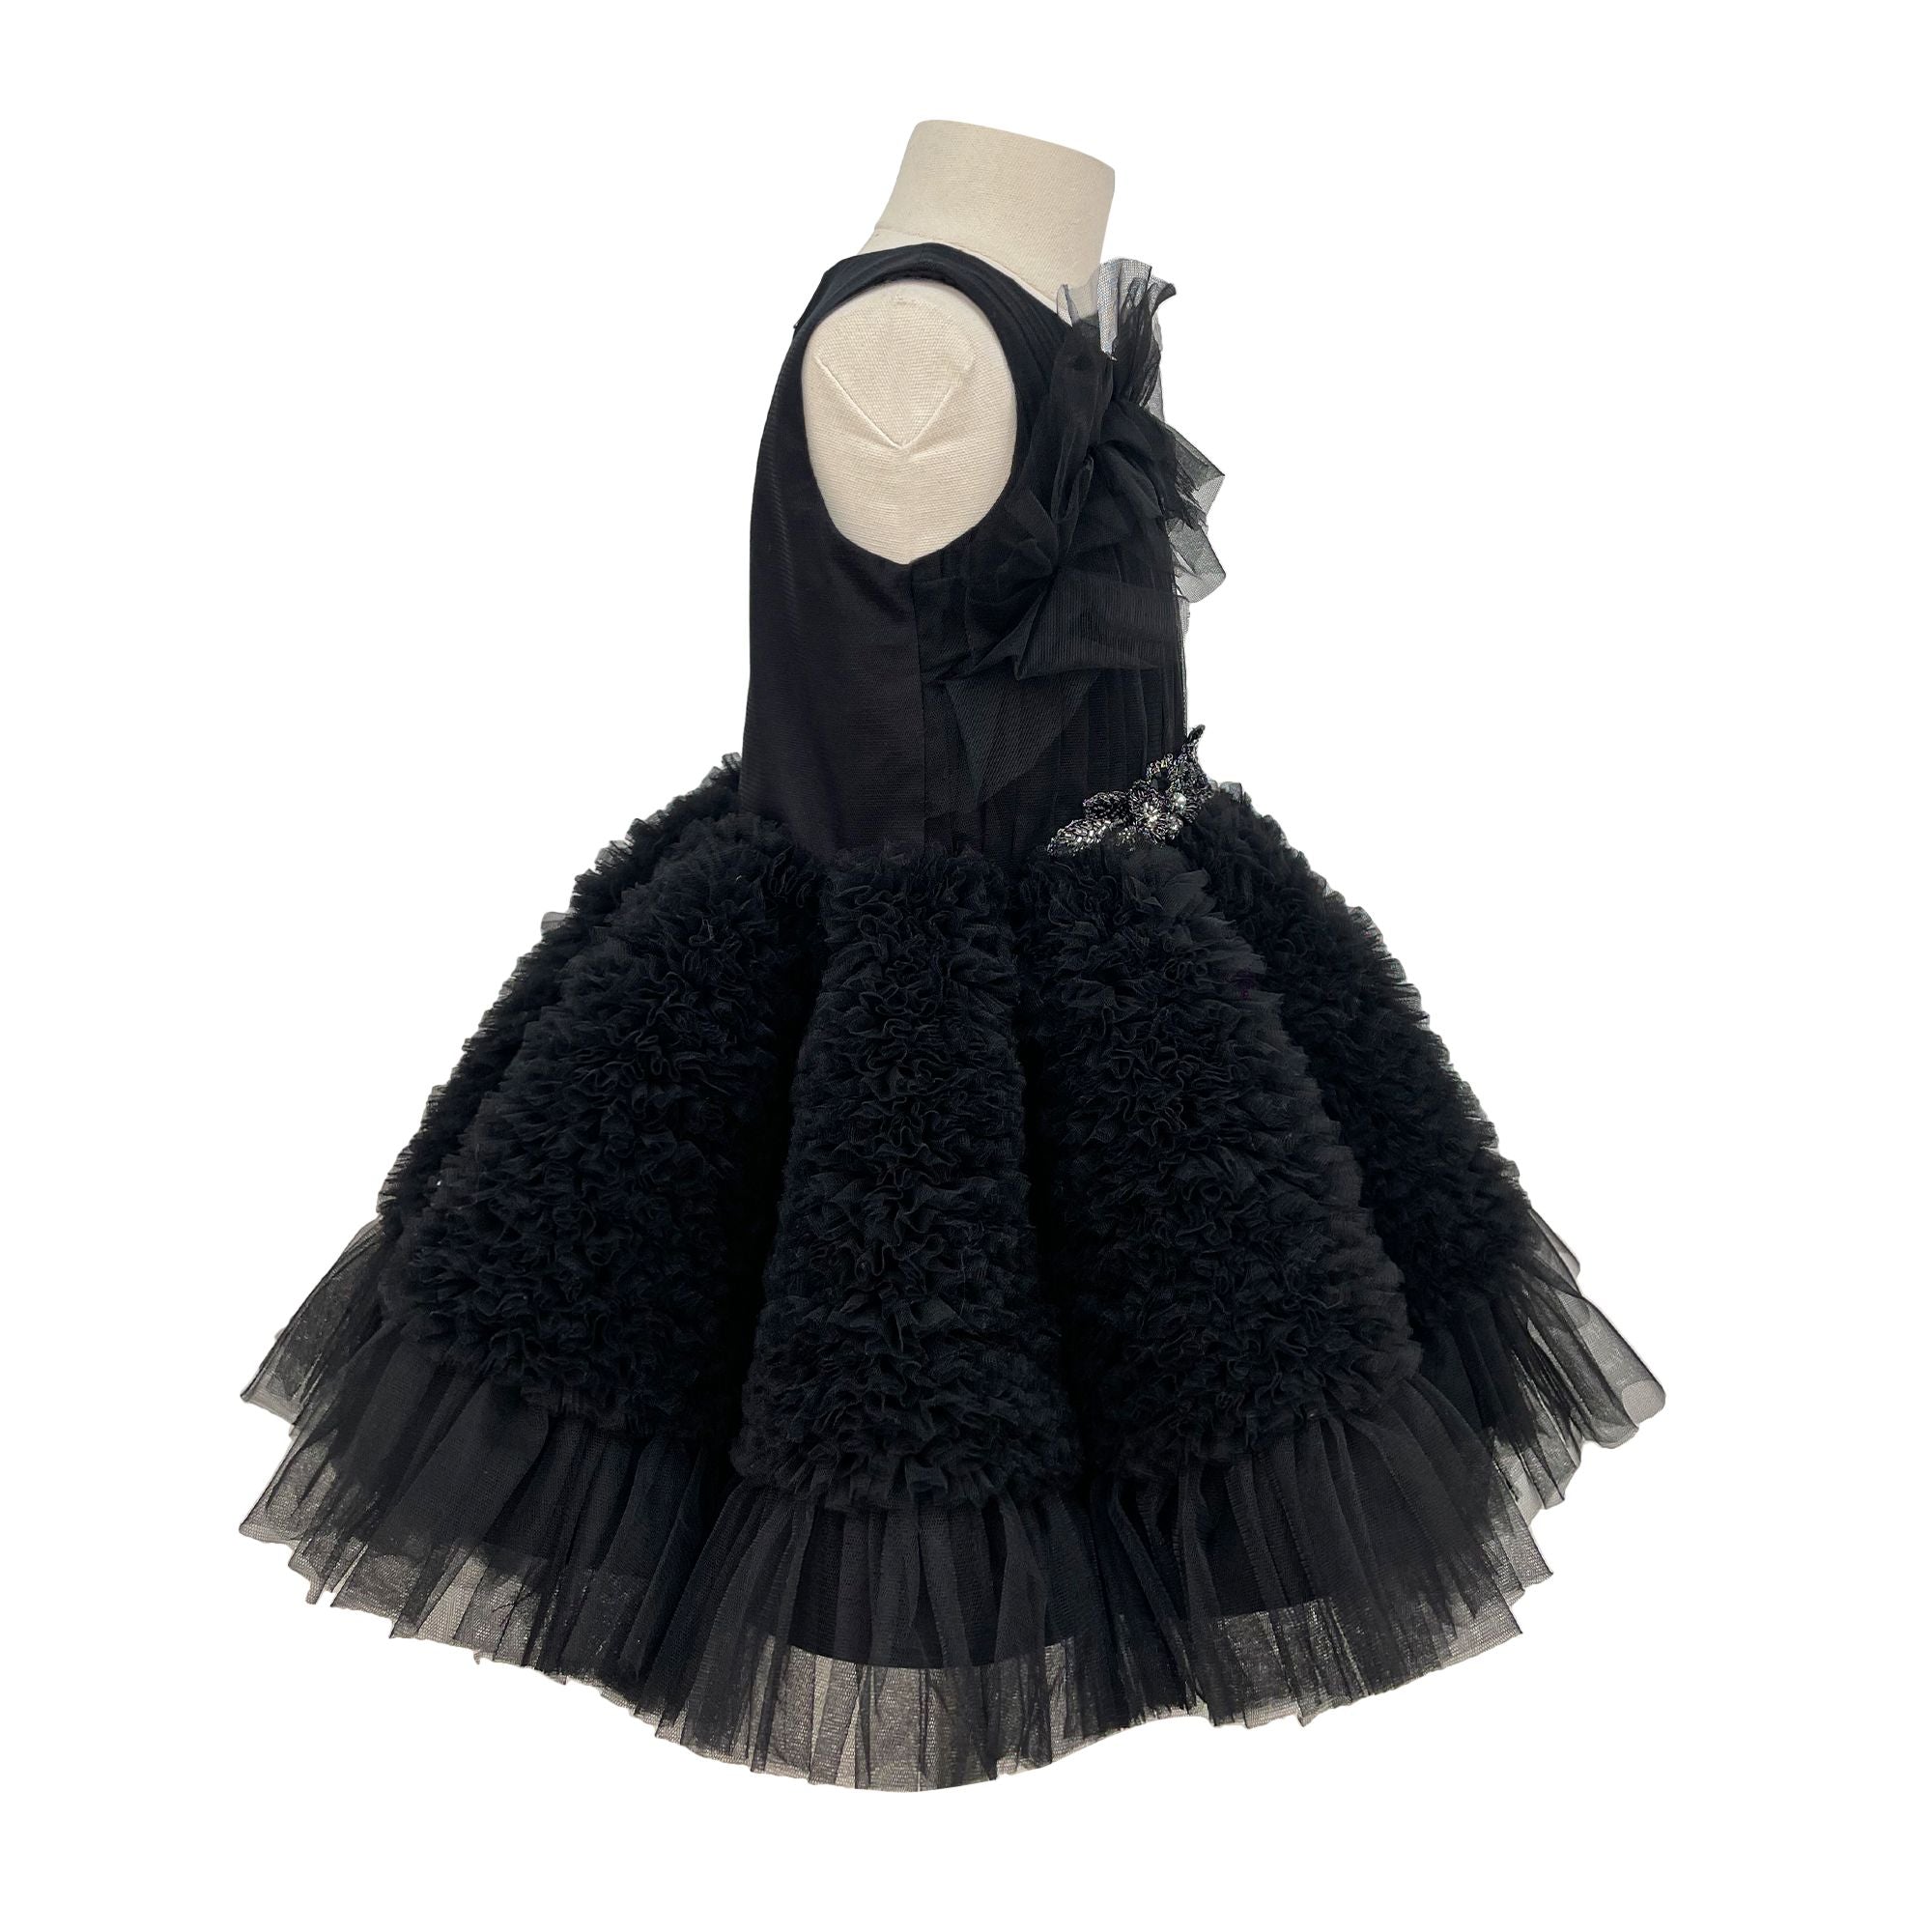 The Embellished Ariel Tulle Dress (Black)